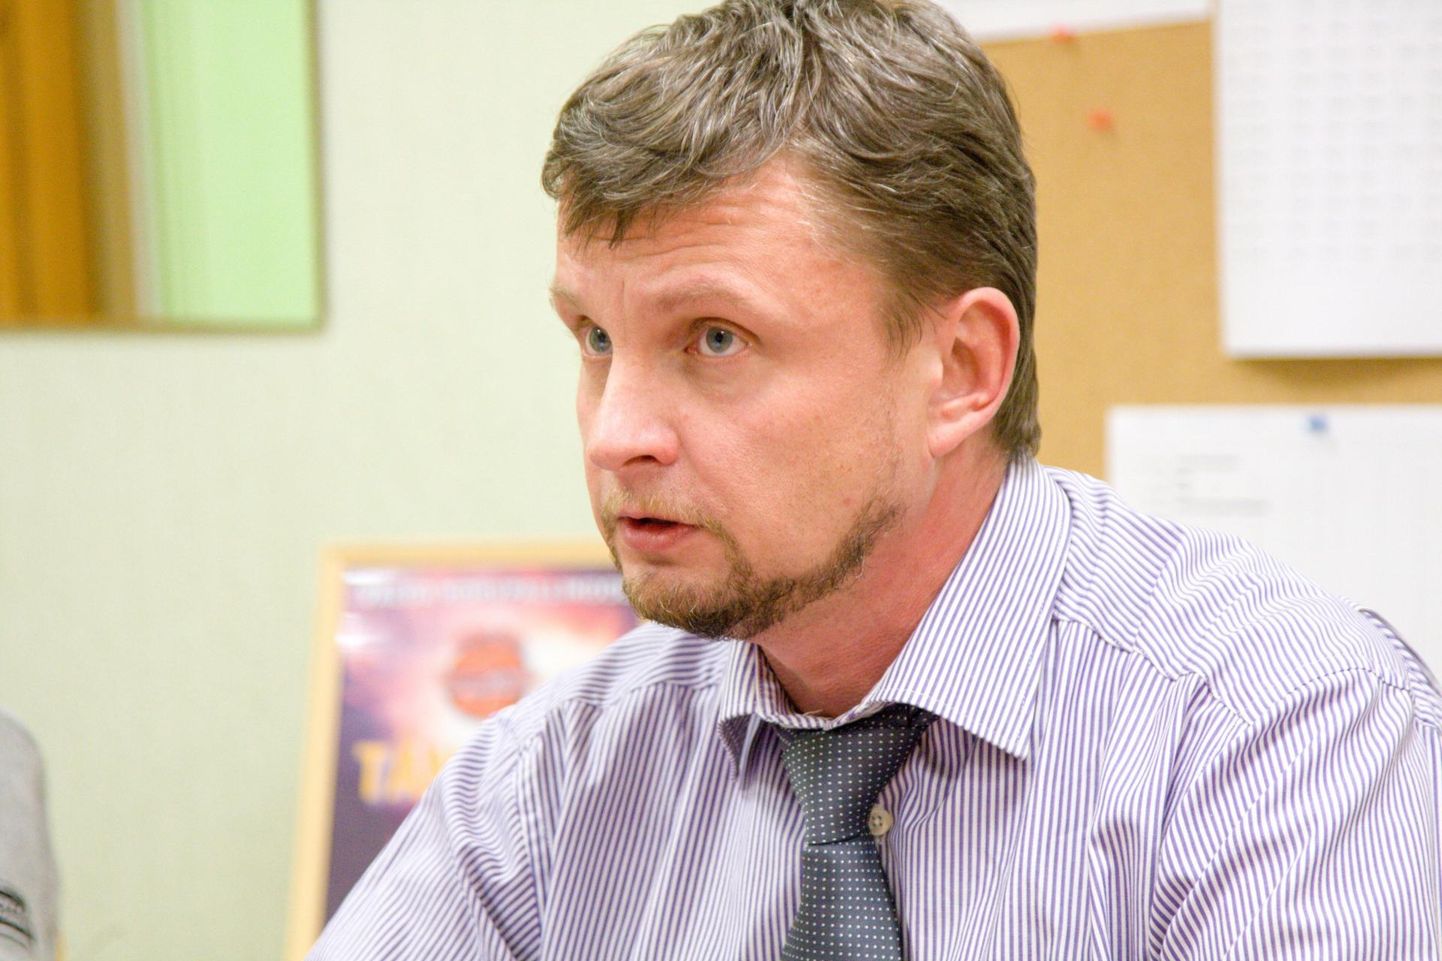 Valga vallavolikogu liige Igor Jallai asus Priimetsa kooli direktori kohusetäitja kohale 12. jaanuaril. Seni pole koostöö hoolekoguga sujunud.